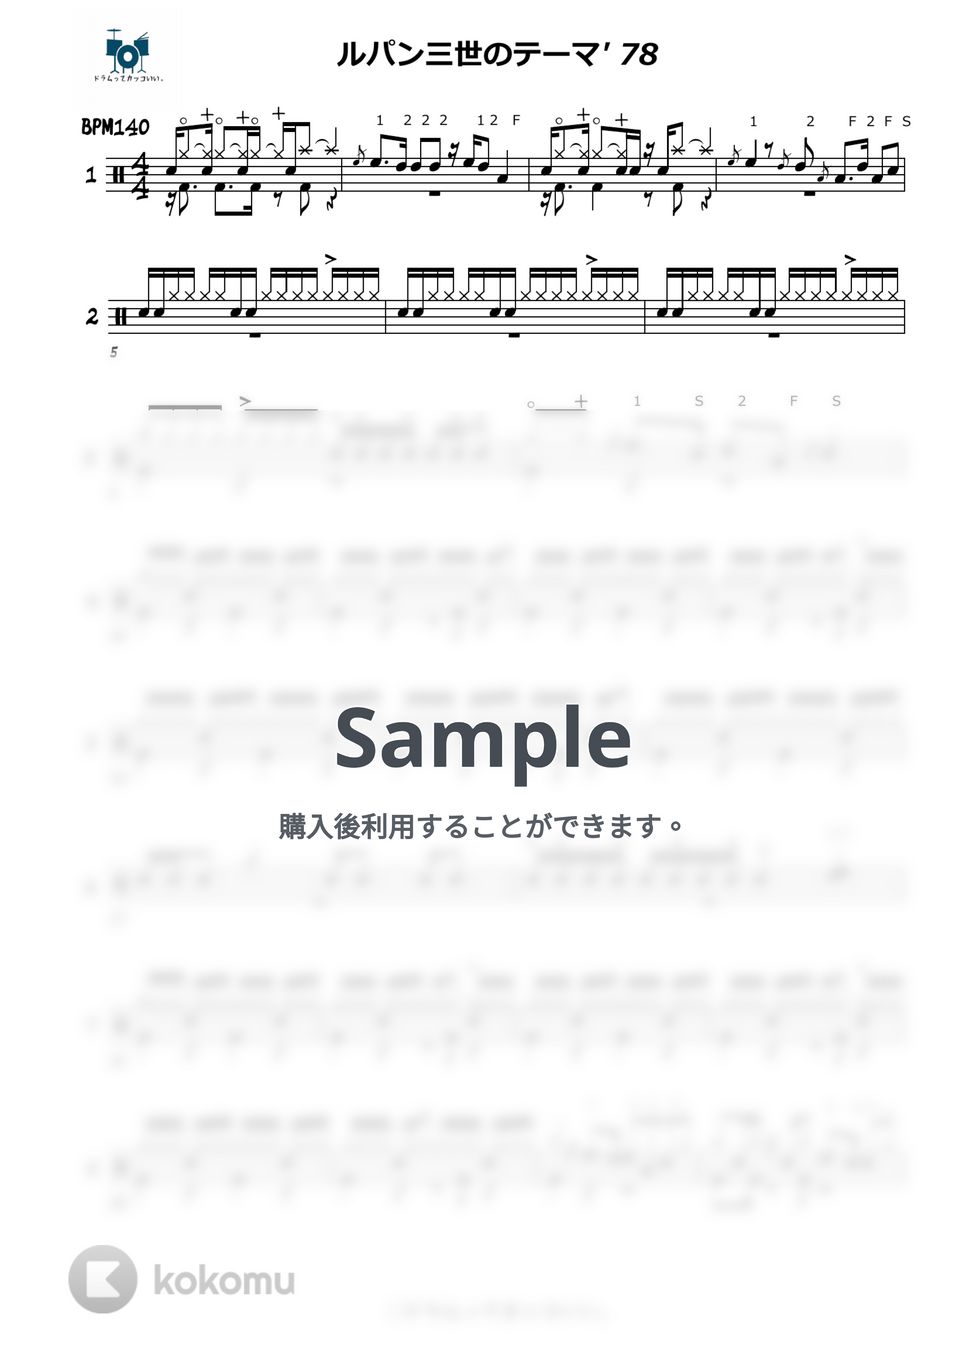 大野雄二 - ルパン三世のテーマ'78 ☆スピード別練習用動画付き☆ by ドラムってカッコいい。